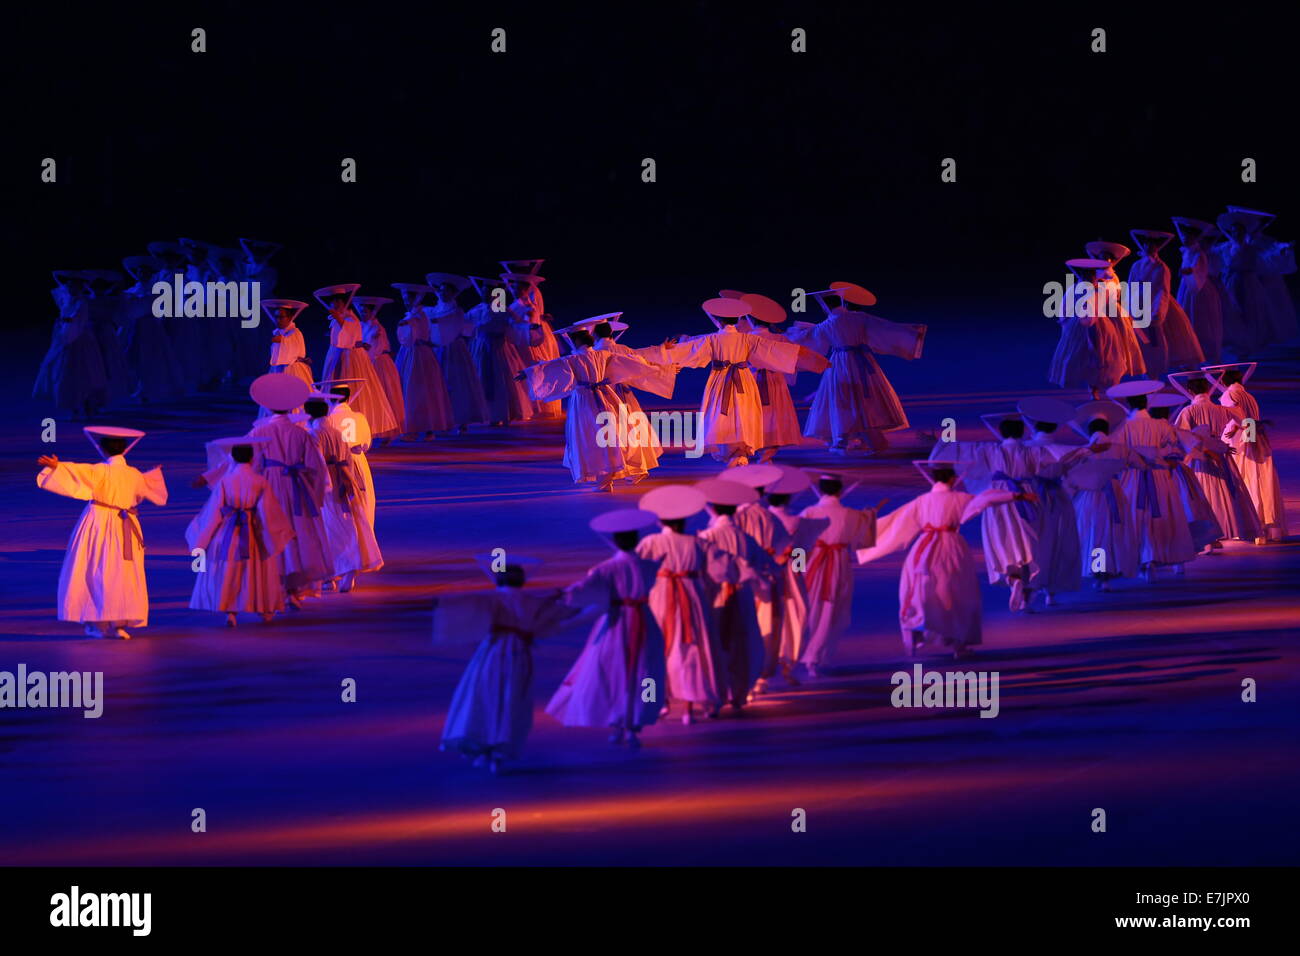 Incheon, Corea del Sur. 19 Sep, 2014. Los actores realizan durante la ceremonia de apertura de la 17ª Juegos Asiáticos en Incheon, Corea del Sur, 19 de septiembre de 2014. Crédito: Fei Maohua/Xinhua/Alamy Live News Foto de stock